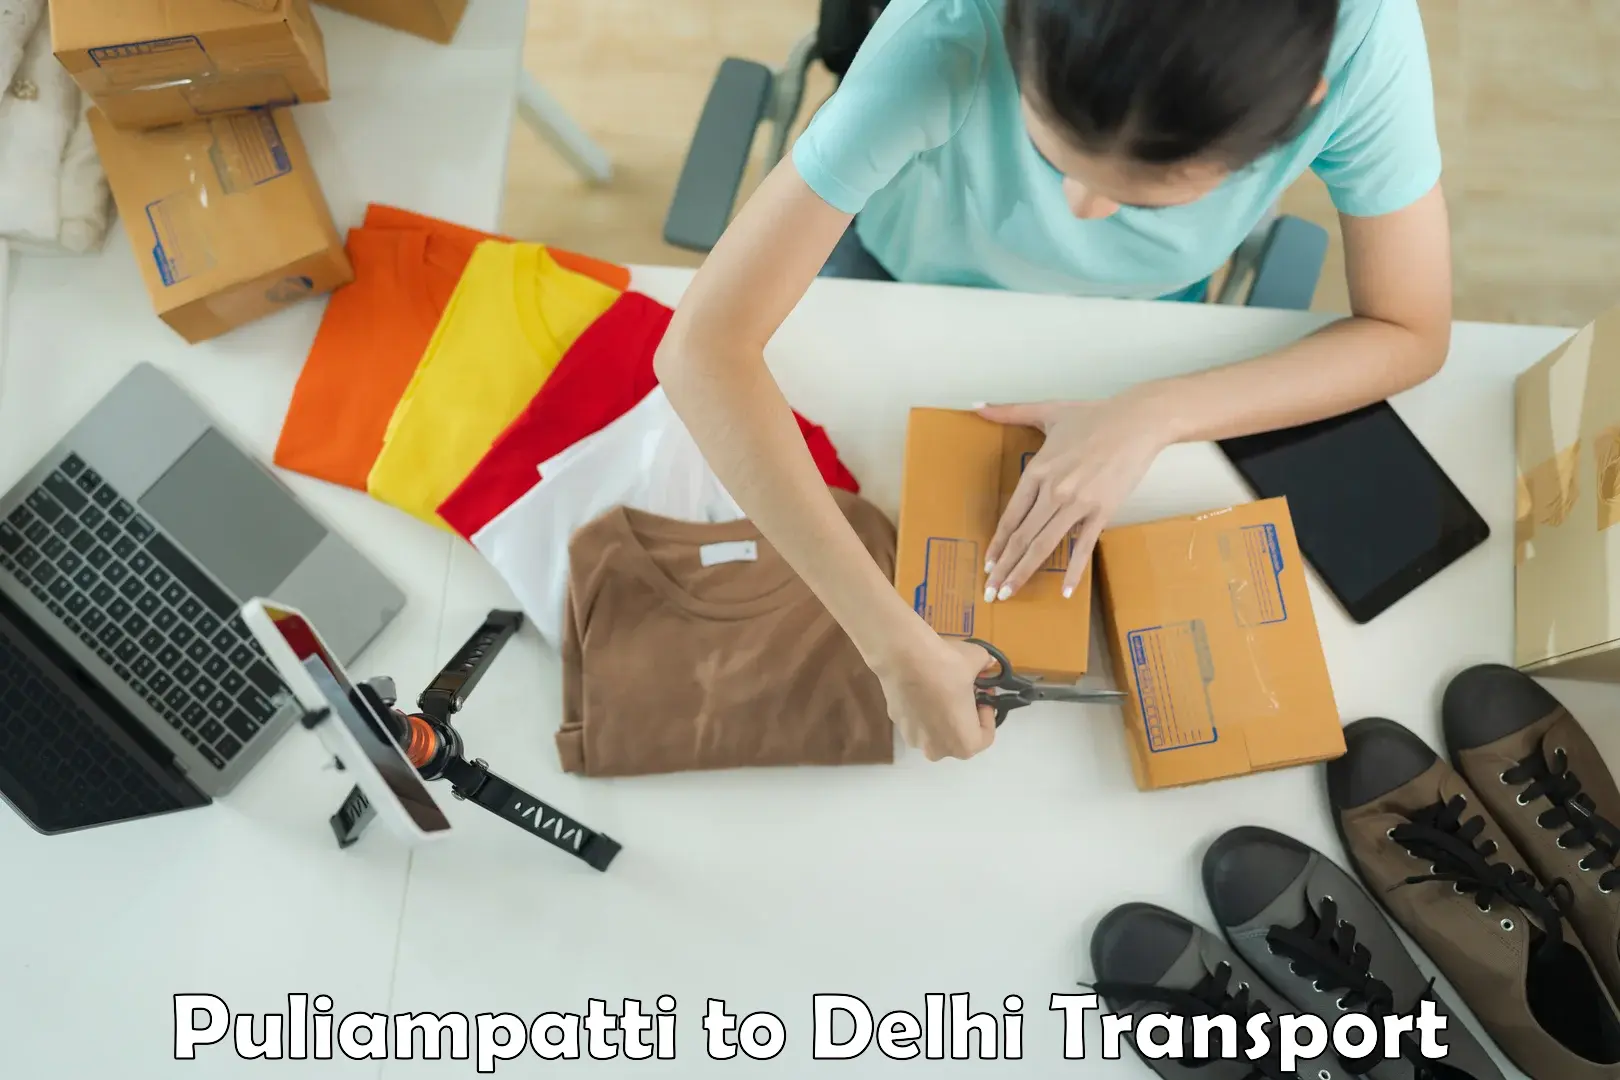 Nearest transport service Puliampatti to Delhi